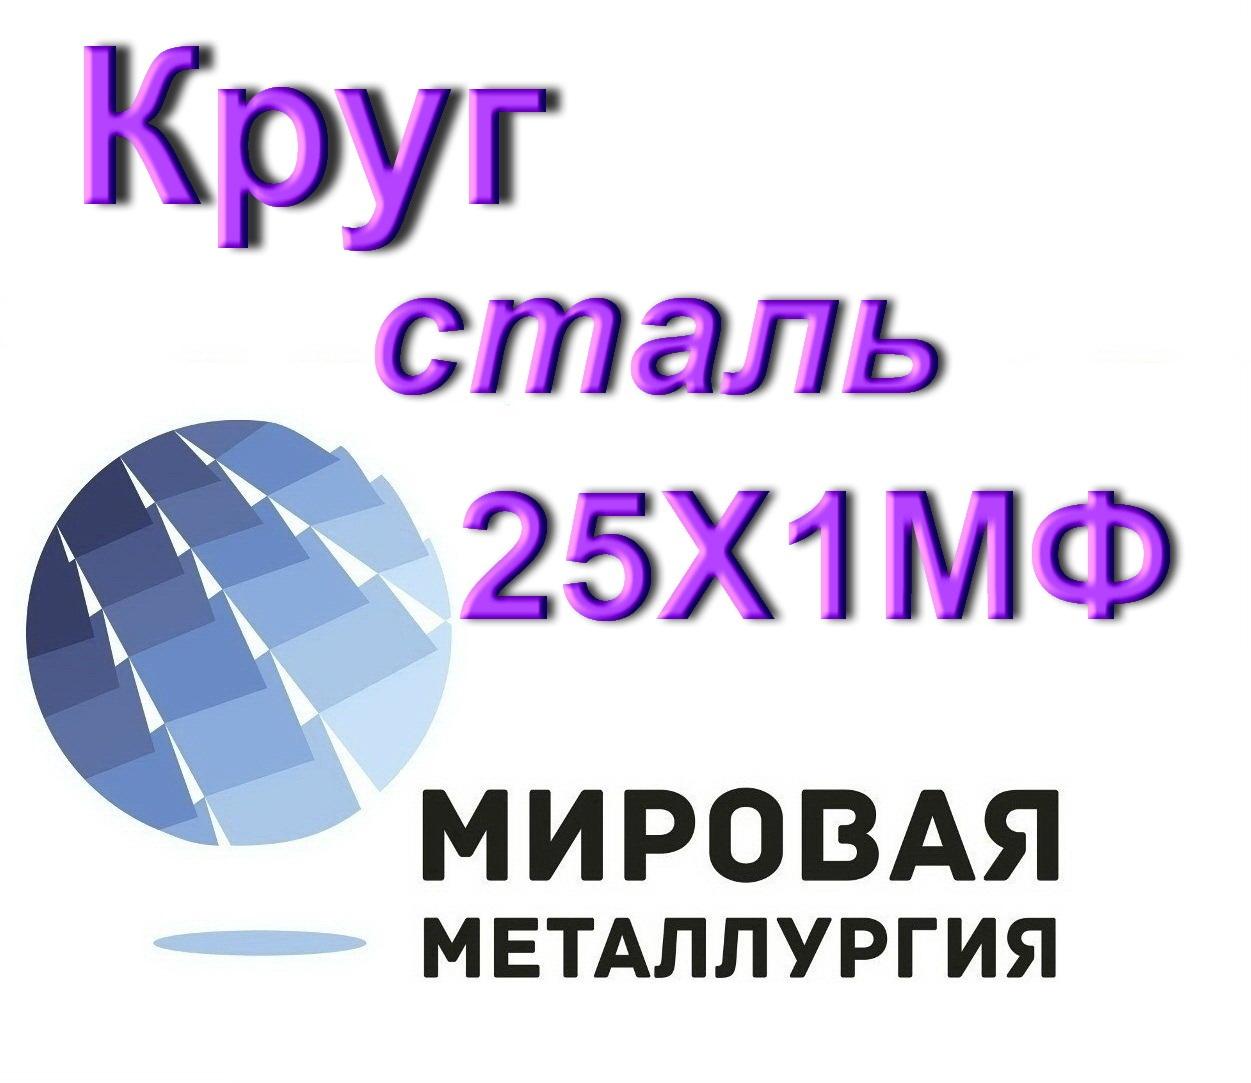 Круг сталь 25Х1МФ жаропрочная, Севастополь